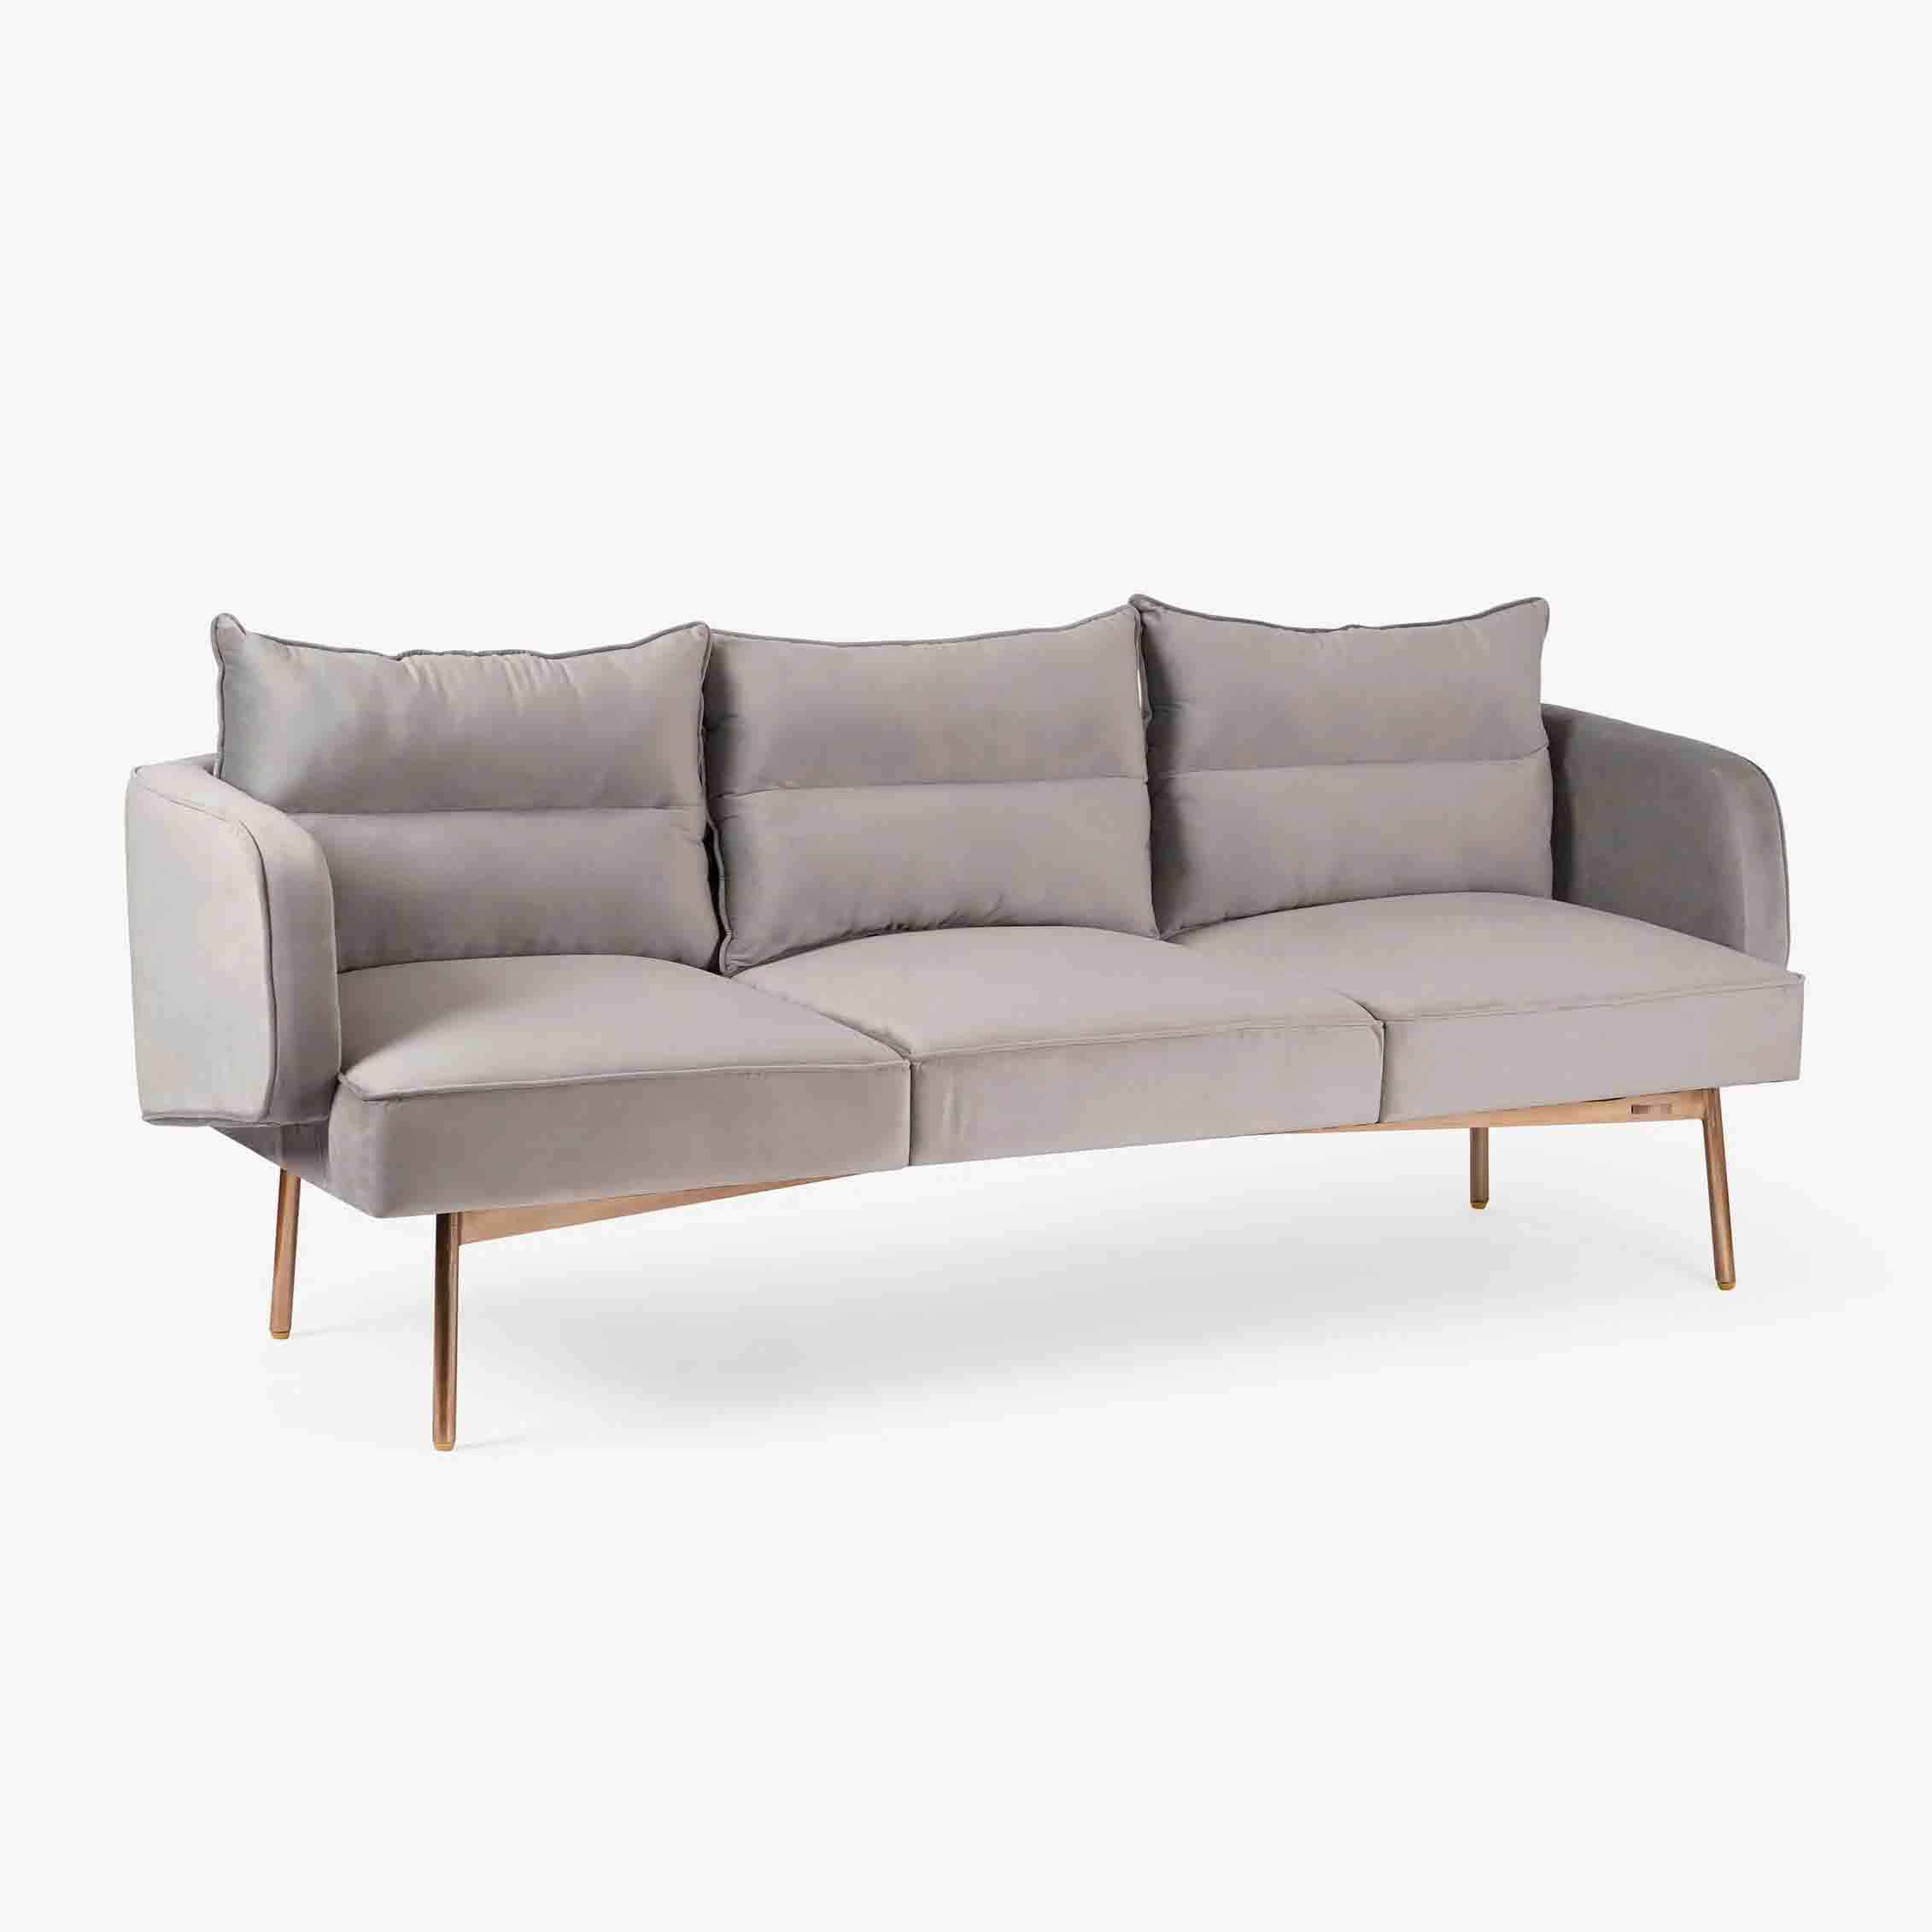 Bicasso Sofa 3 Seater